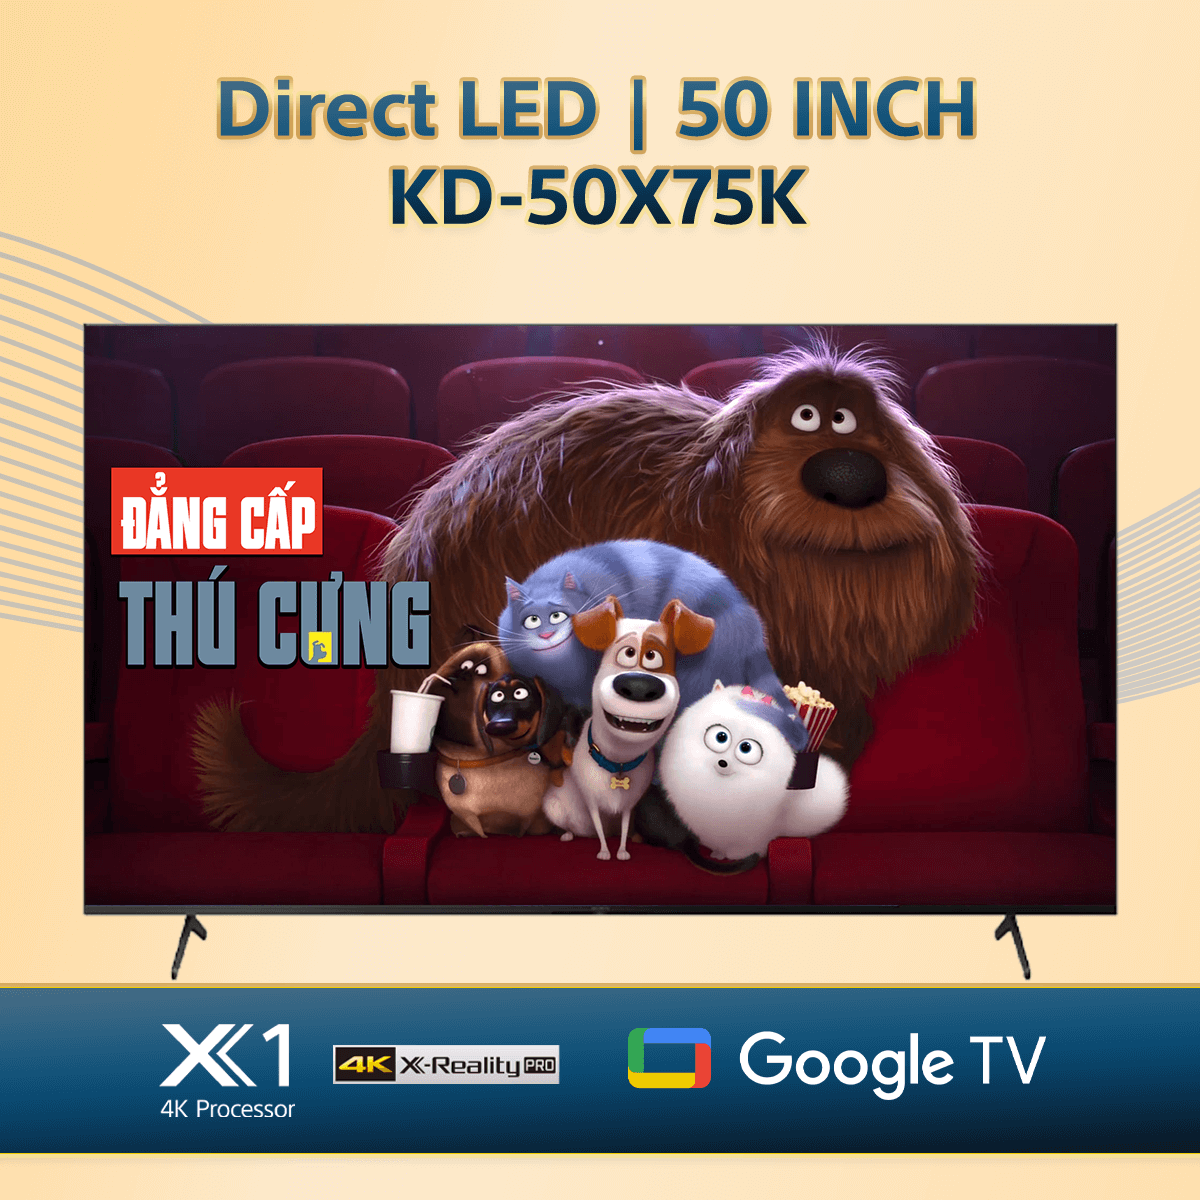 KD-50X75K | 4K Ultra HD | Dải tần nhạy sáng cao (HDR) | Smart TV (Google TV)